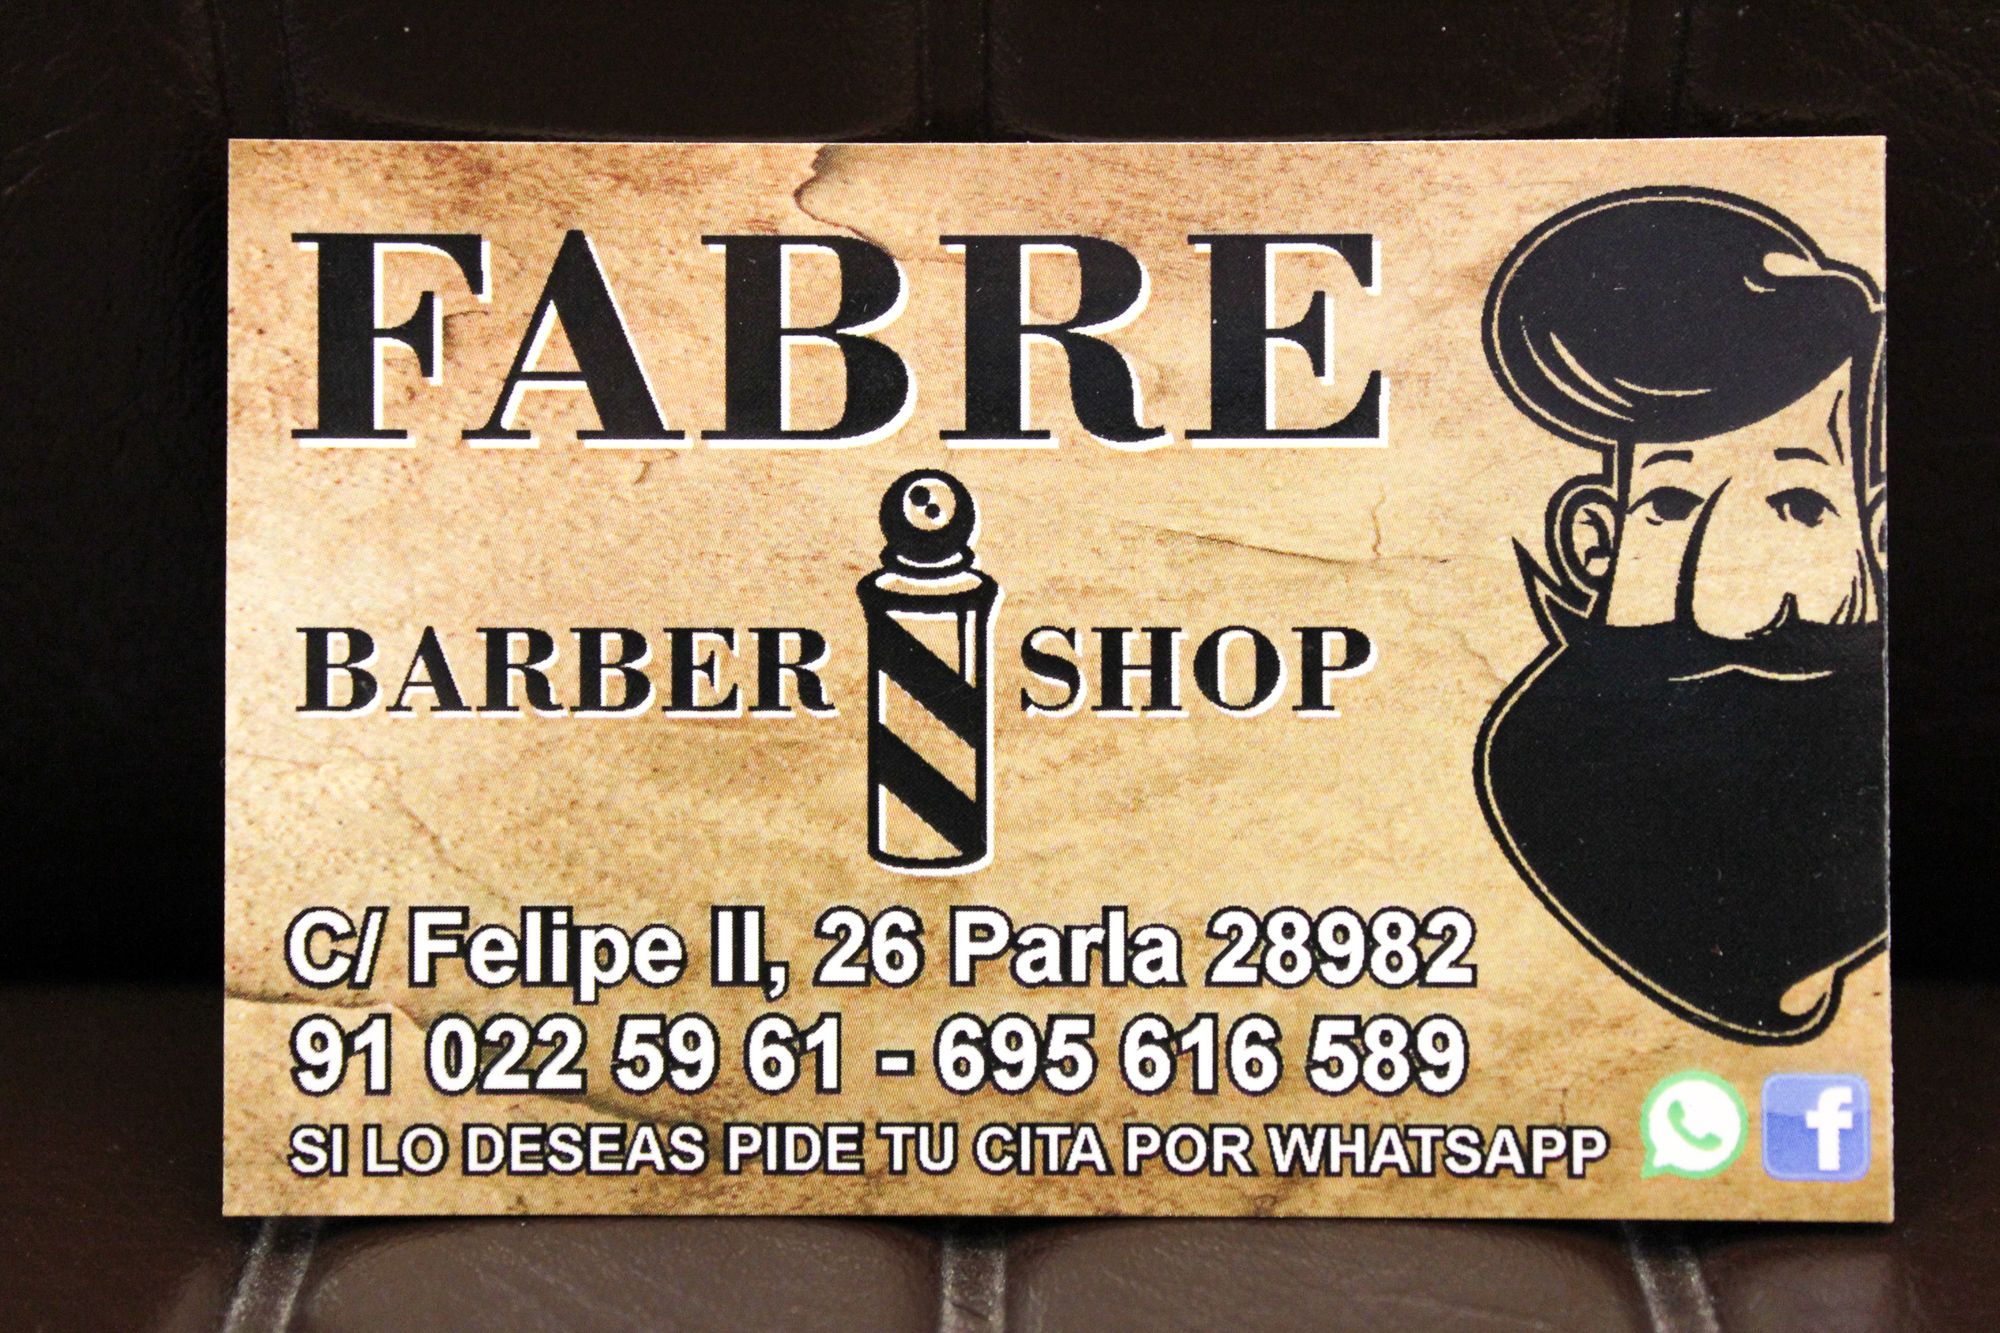 Foto 11 de Peluquería y barbería en Parla | Fabre Barber Shop